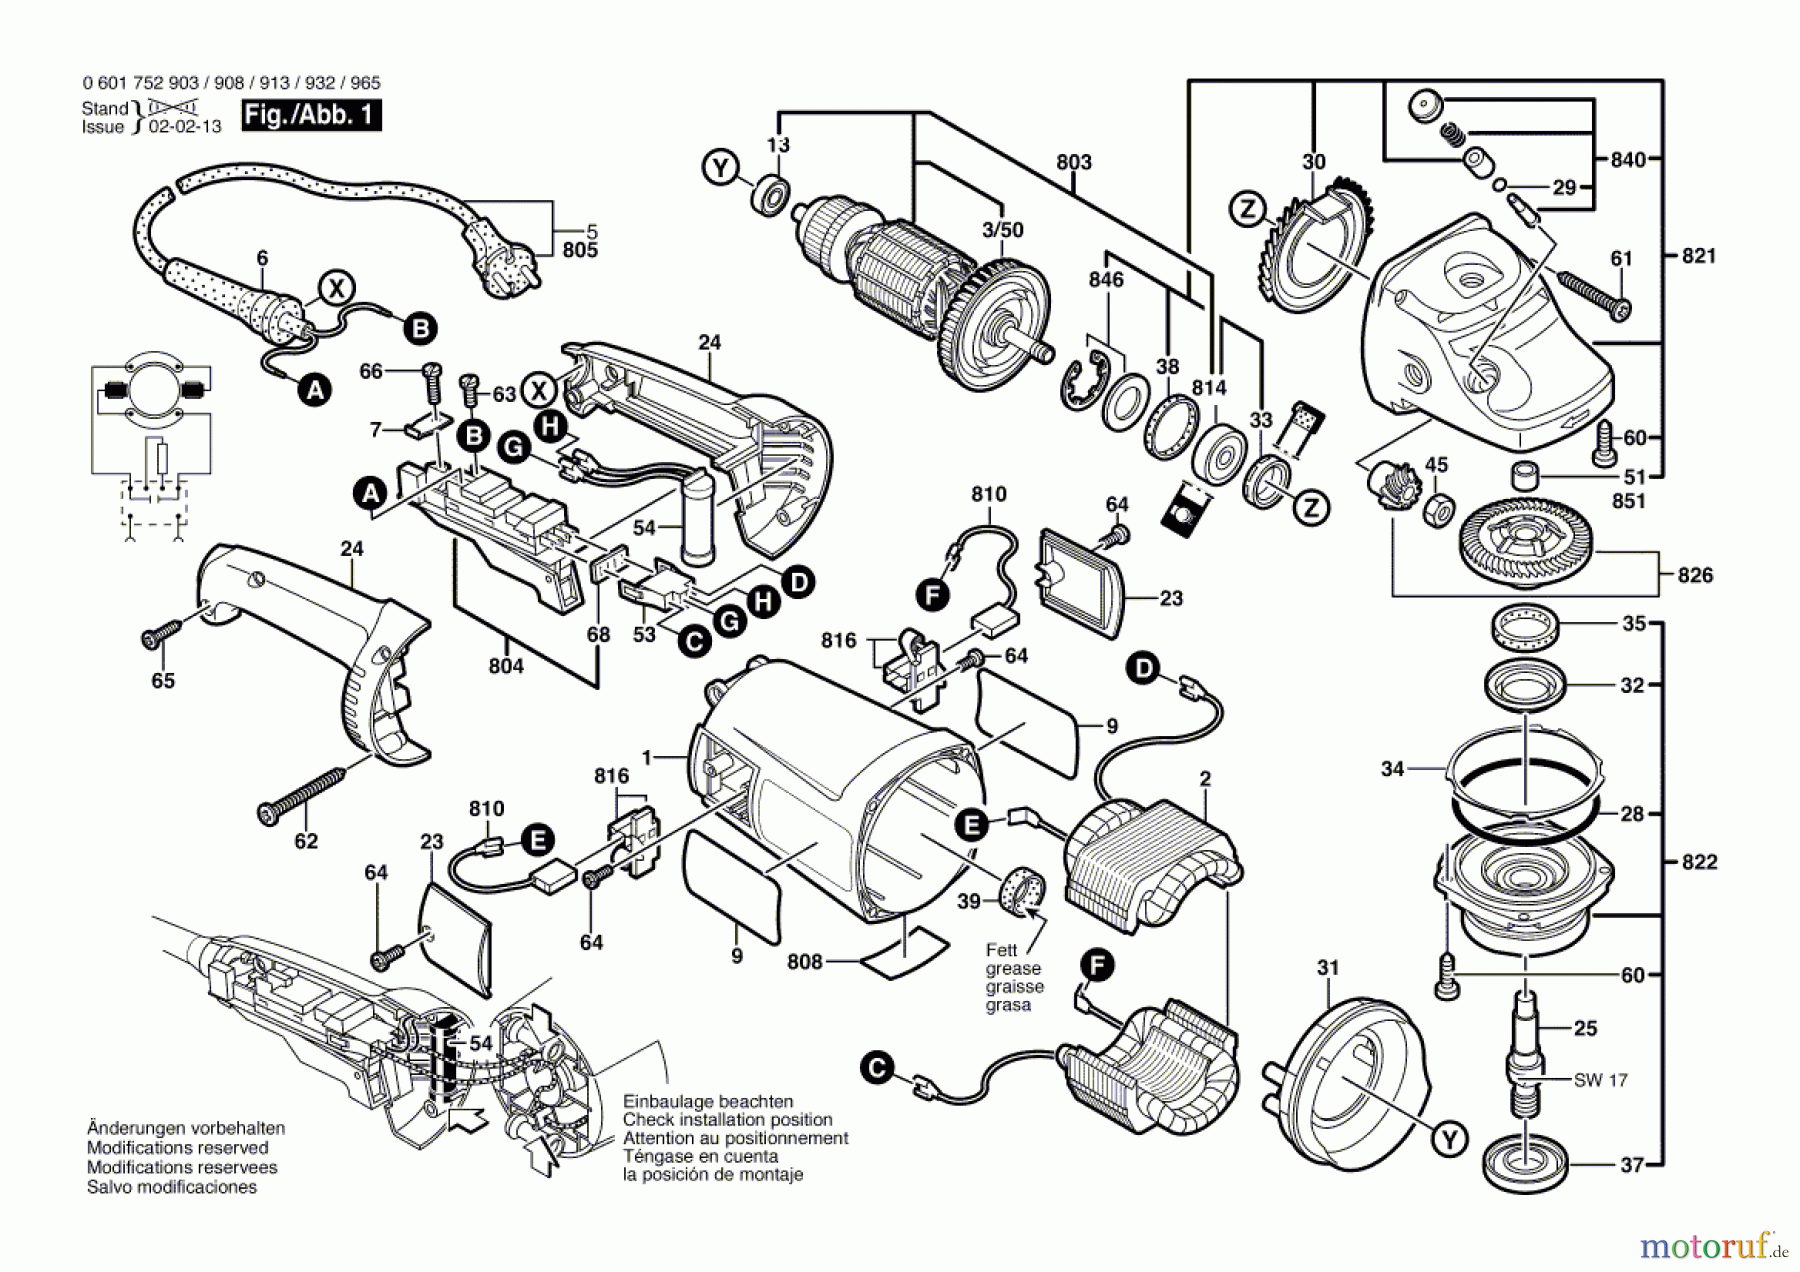  Bosch Werkzeug Winkelschleifer GWS 20-230 J Seite 1